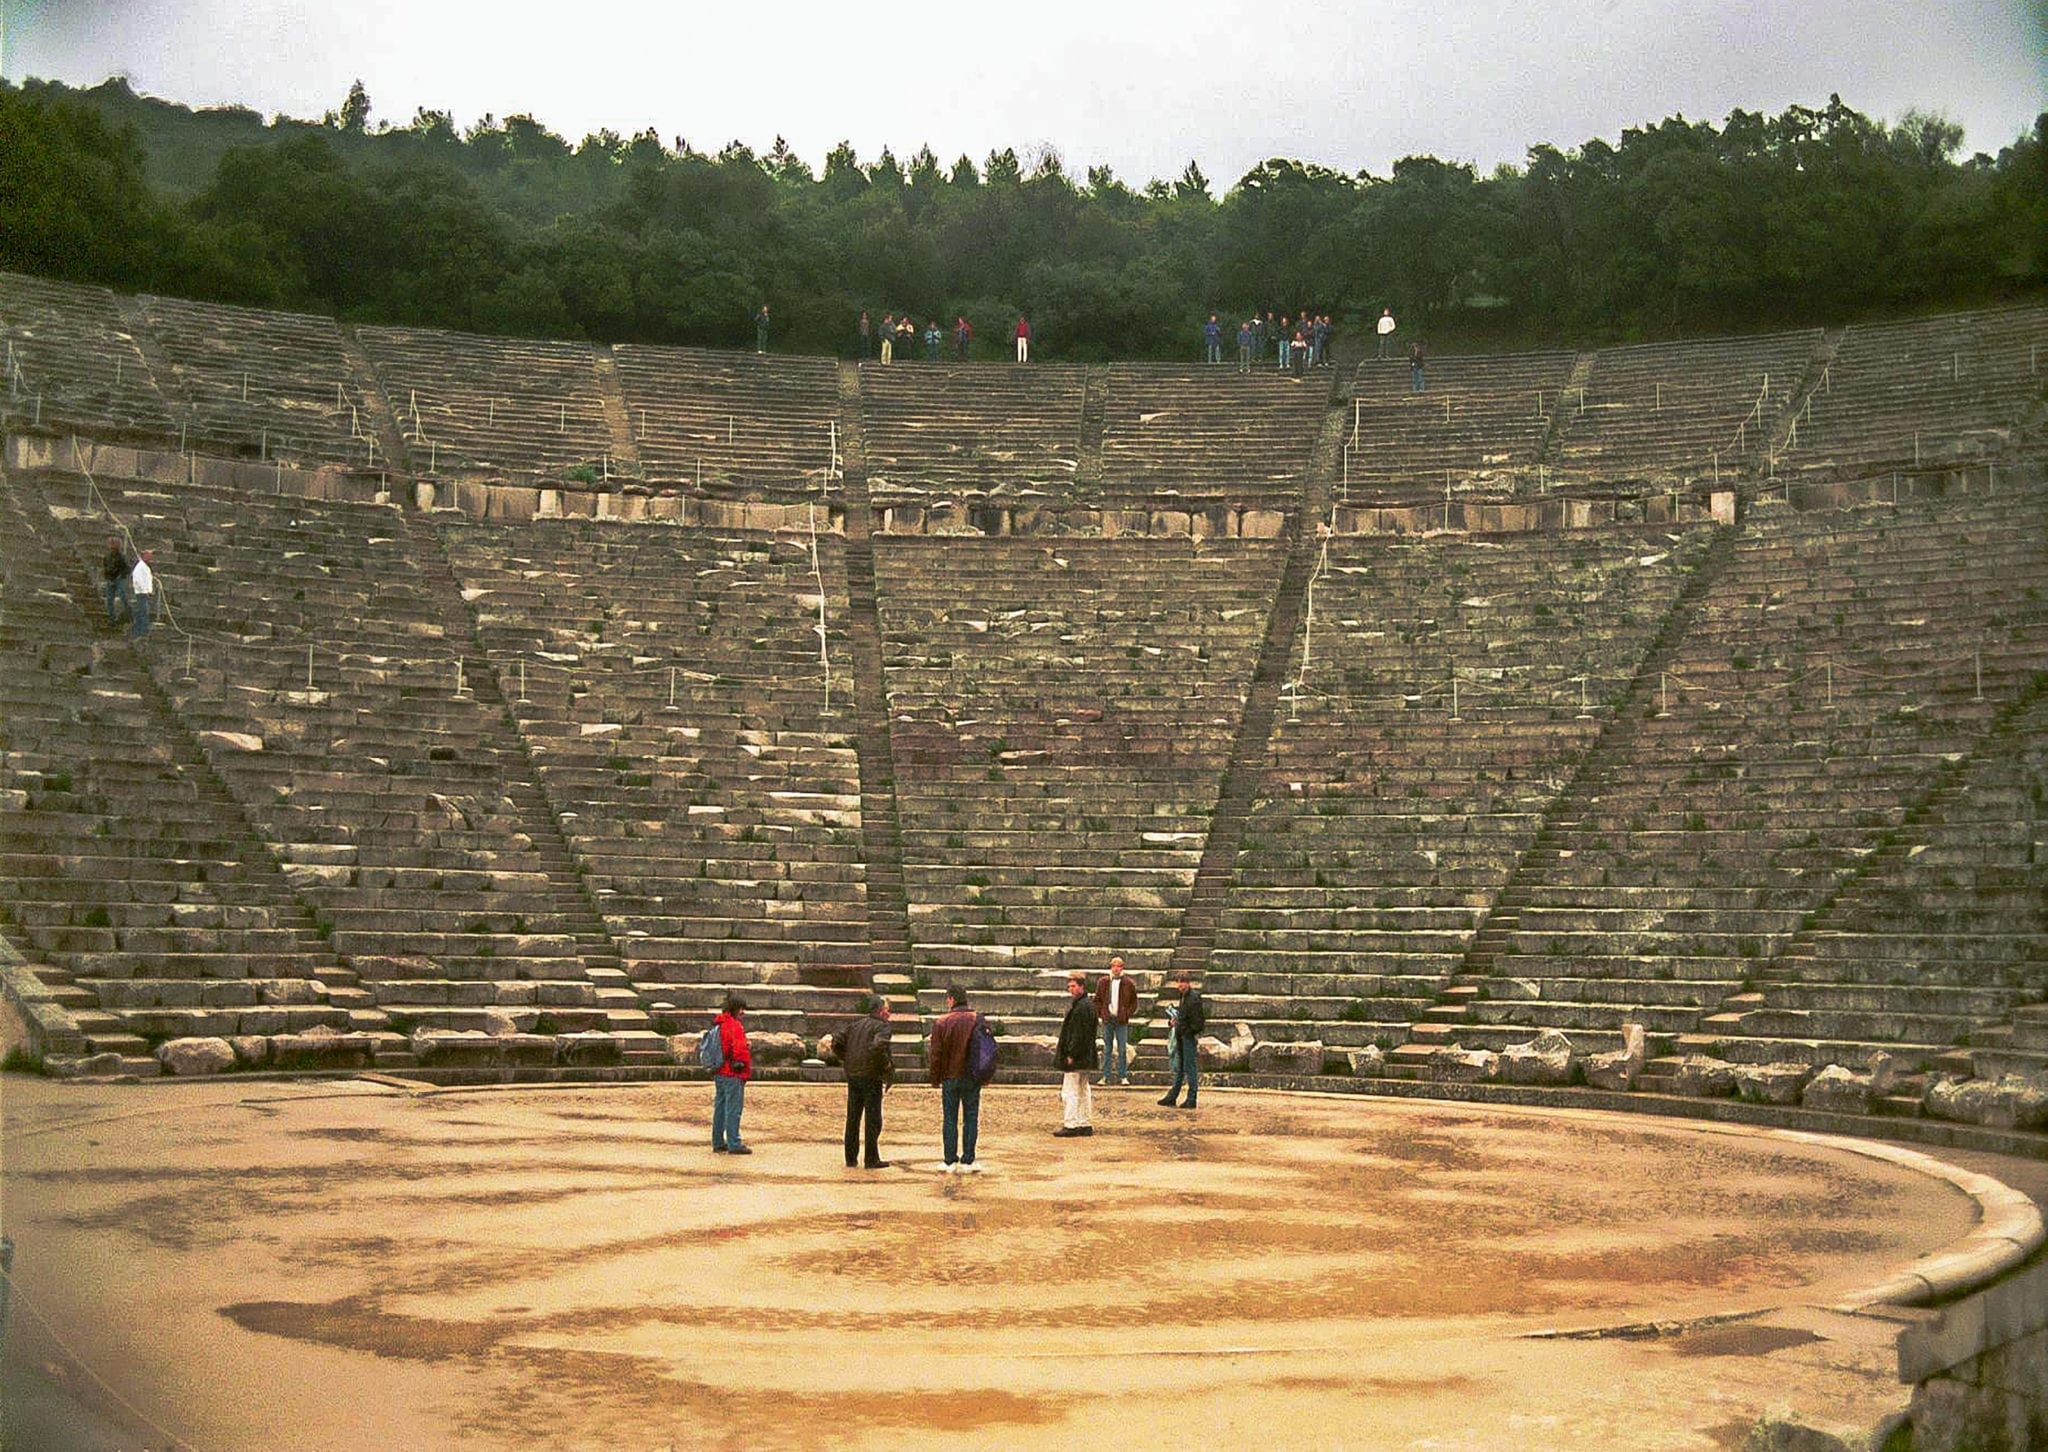 Ancient Theatre of the Asklepieion at Epidaurus